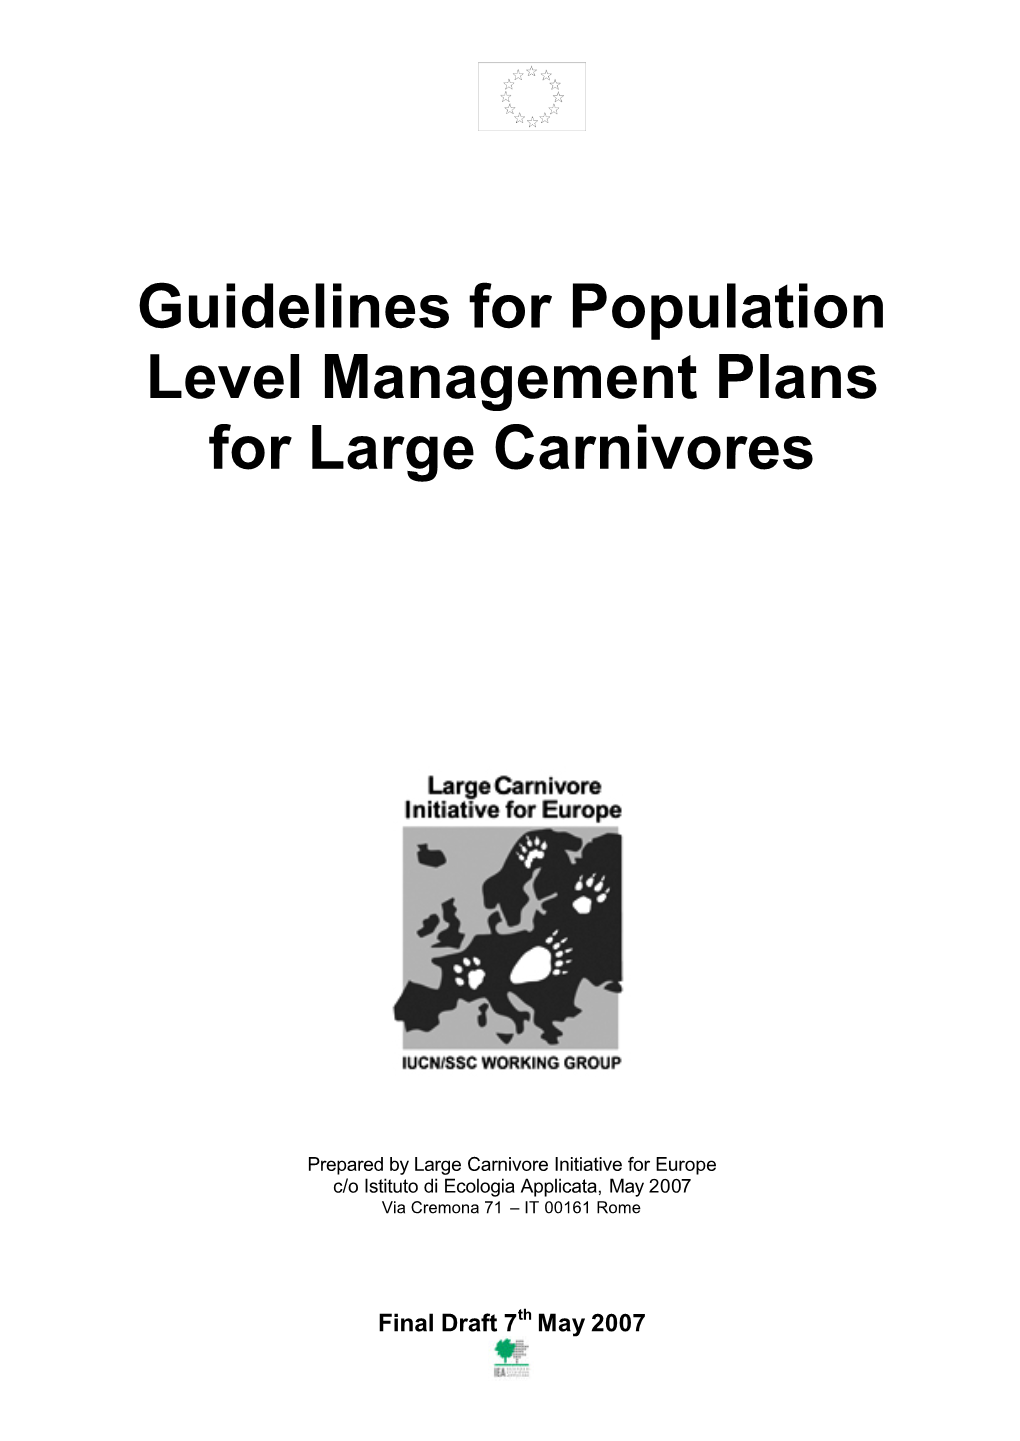 Guidelines for Population Level Management Plans for Large Carnivores